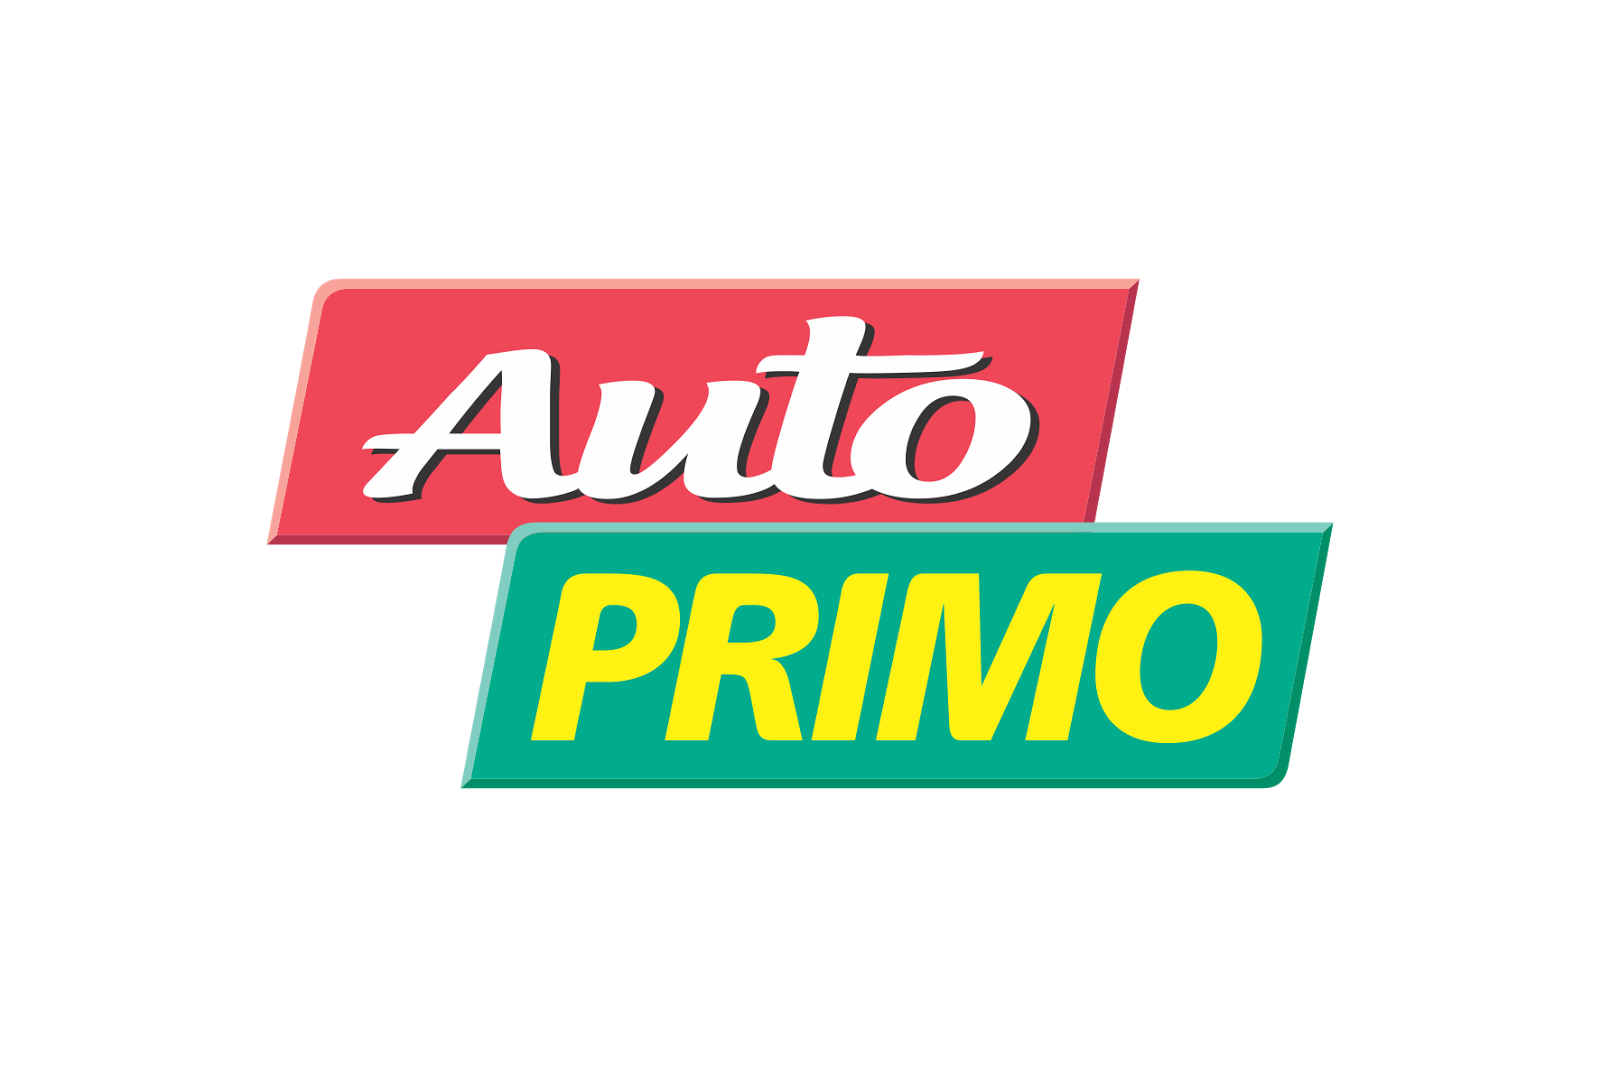 Bm automobiles logo